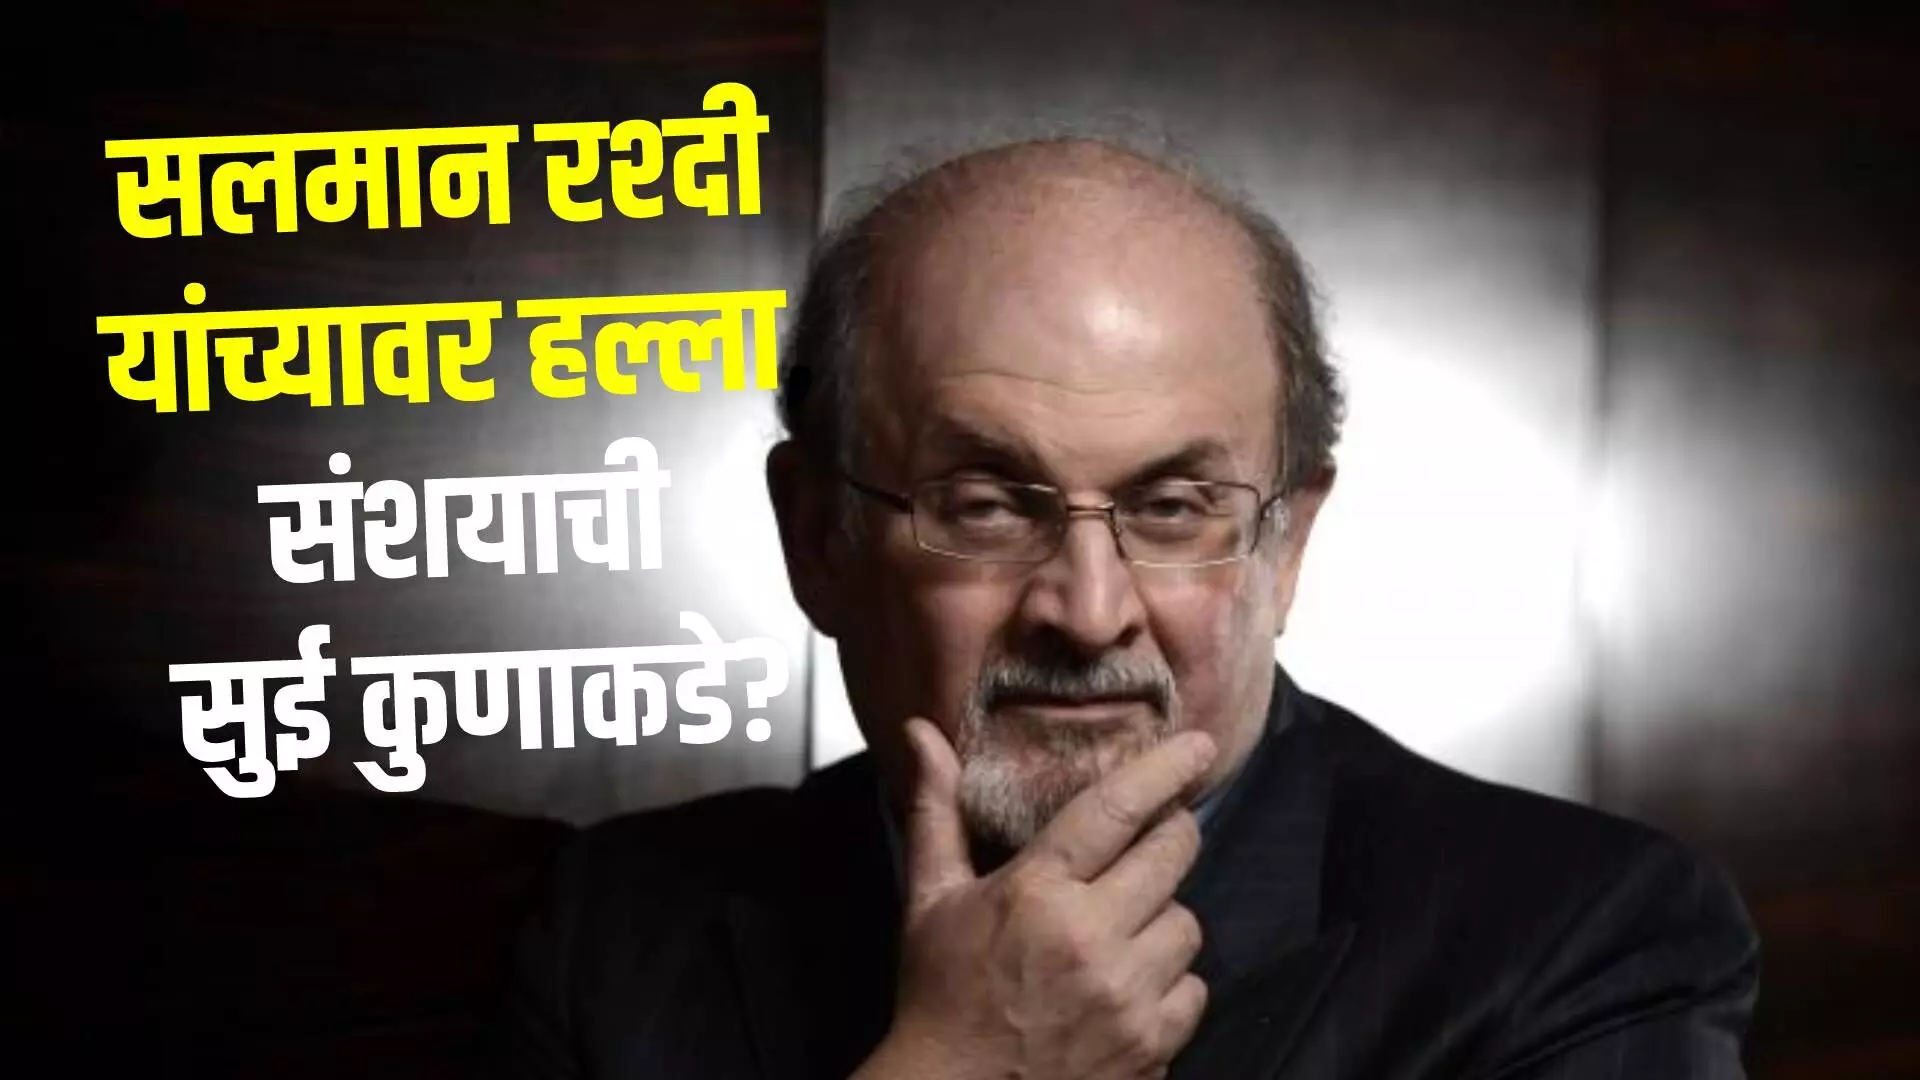 Salman Rushdie attacked : जागतिक कीर्तीचे लेखक सलमान रश्दी यांच्यावर प्राणघातक हल्ला, संशयाची सुई कुणाकडे?